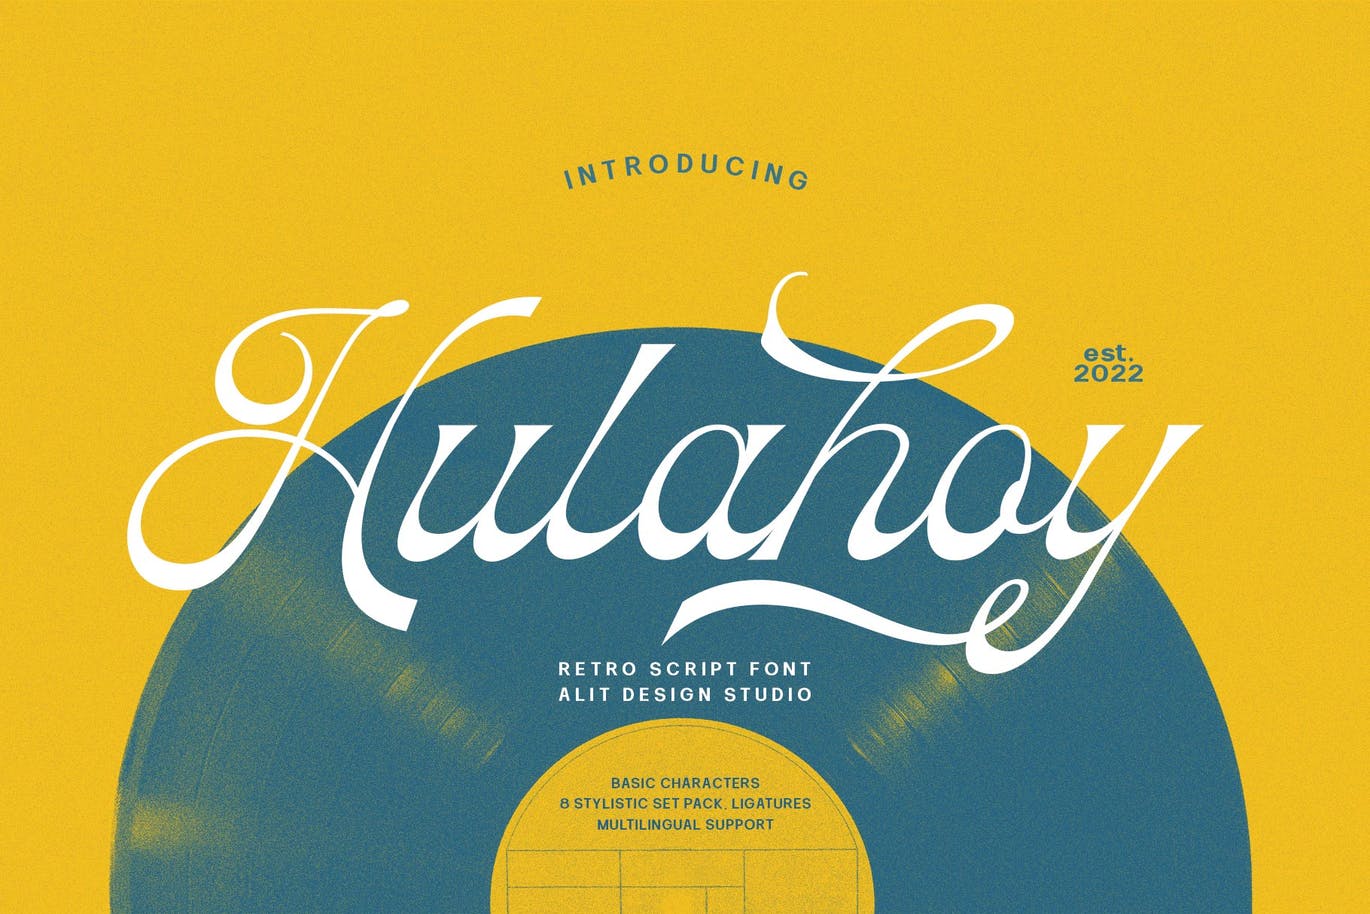 70年代风格音符字体素材 Hulahoy Typeface 设计素材 第11张